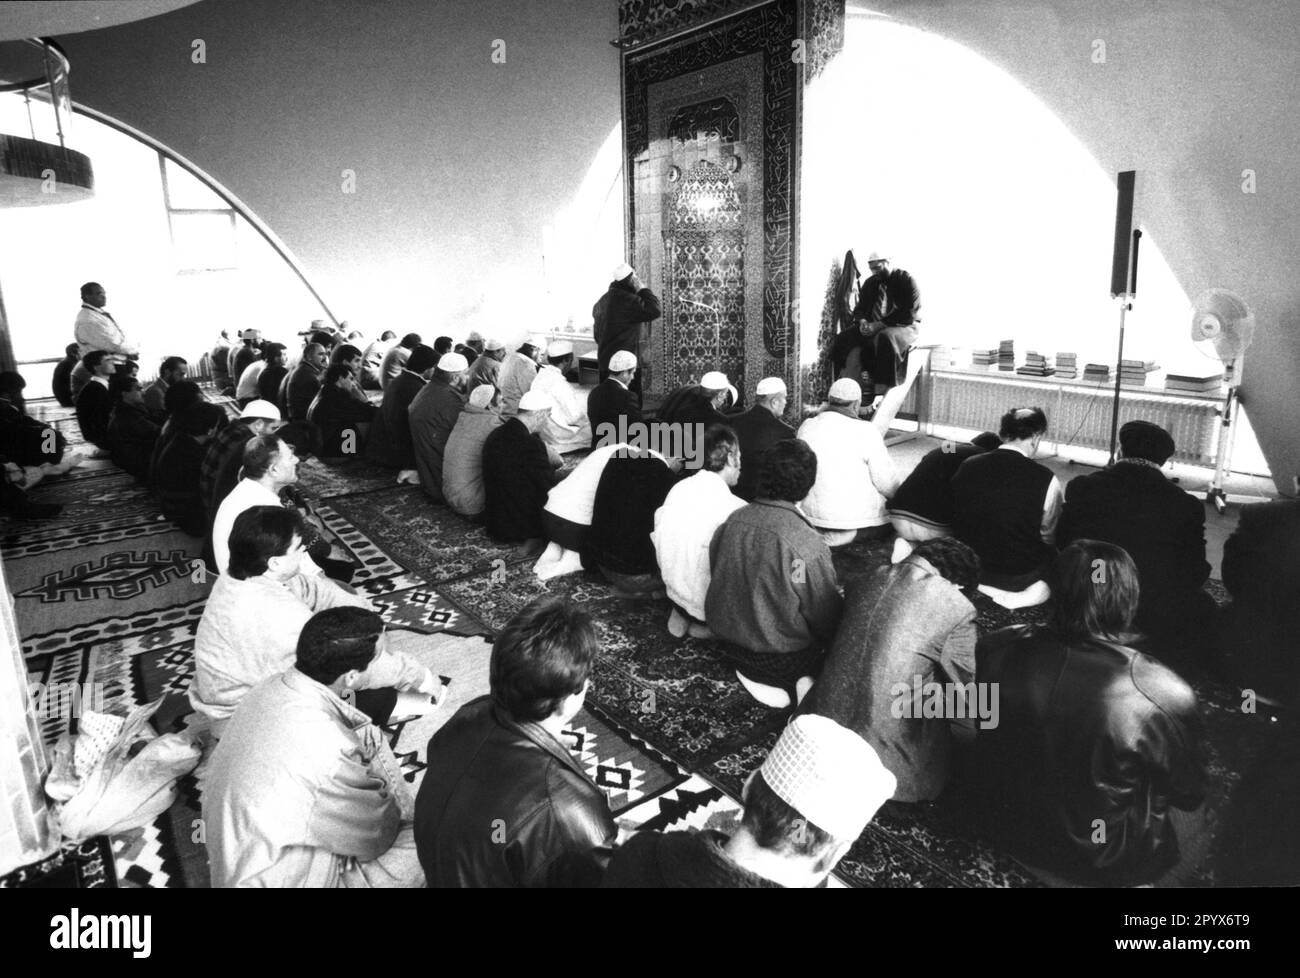 Das islamische Zentrum in München Freimann wurde 1973 eröffnet und ist Wohnsitz der islamischen Gemeinschaft in Deutschland. Dieses Bild zeigt moslems beim Beten. Stockfoto